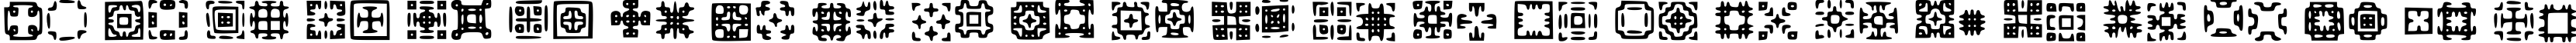 Пример написания английского алфавита шрифтом Glypha Regular